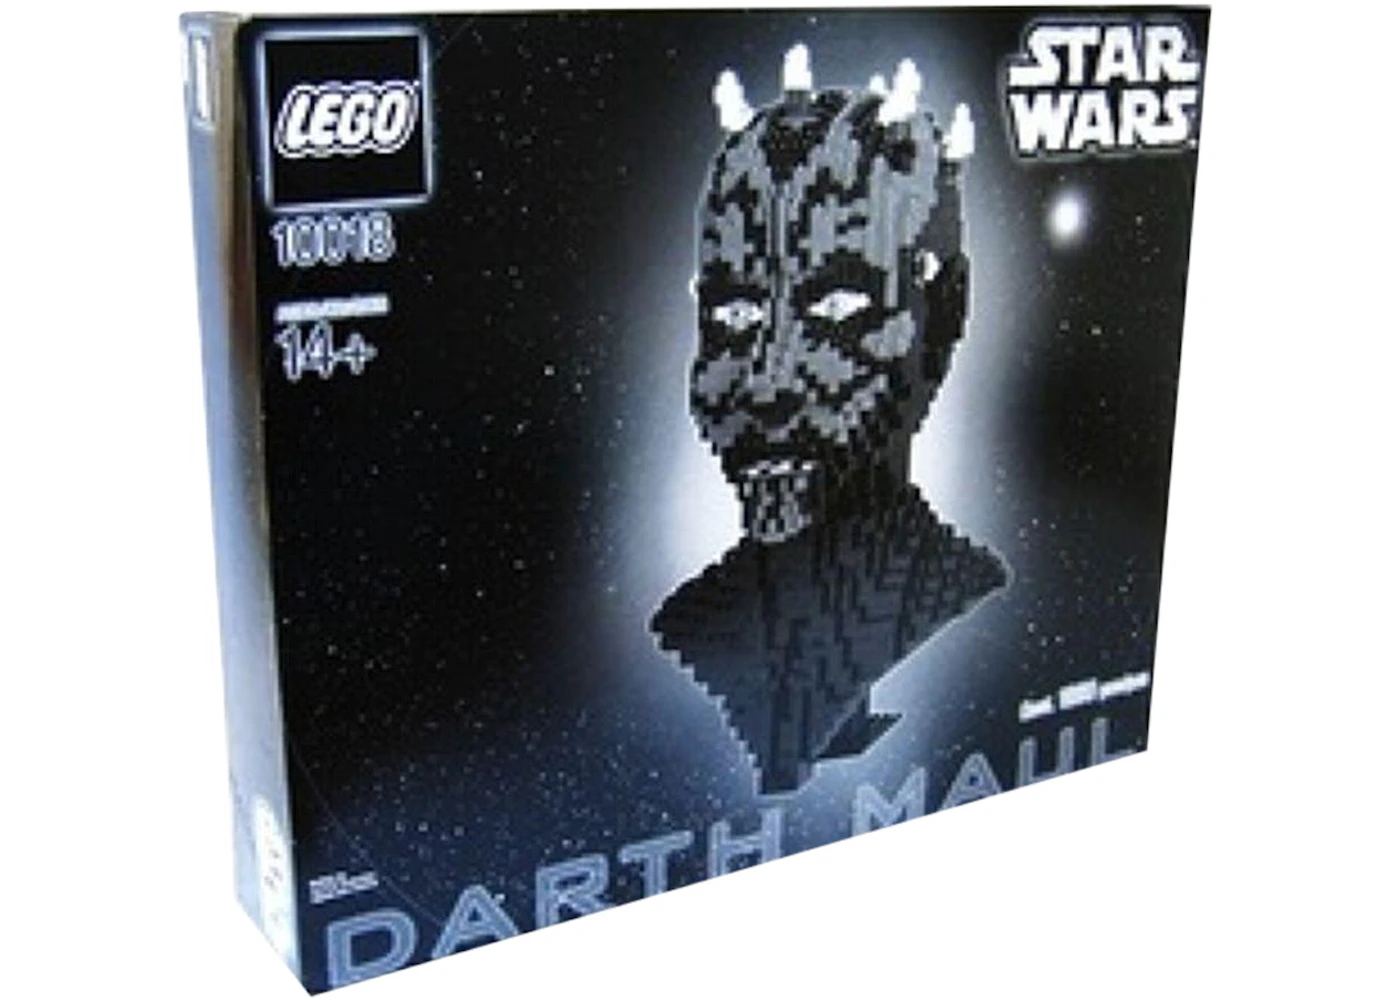 LEGO Wars Darth Maul Set 10018 - US